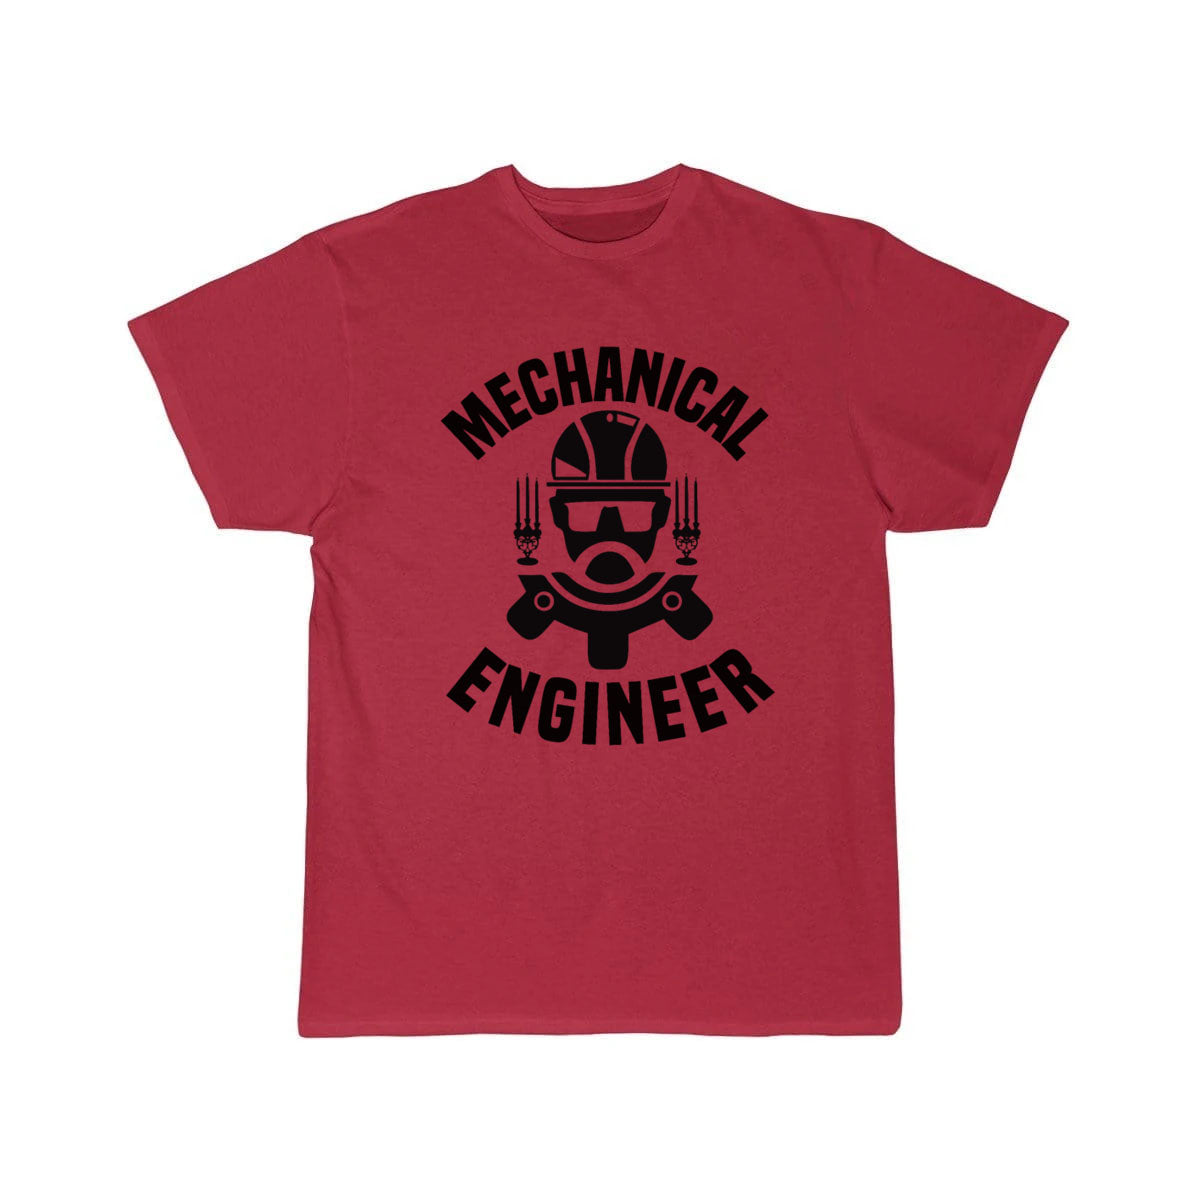 Mechanical Engineer T-Shirt THE AV8R